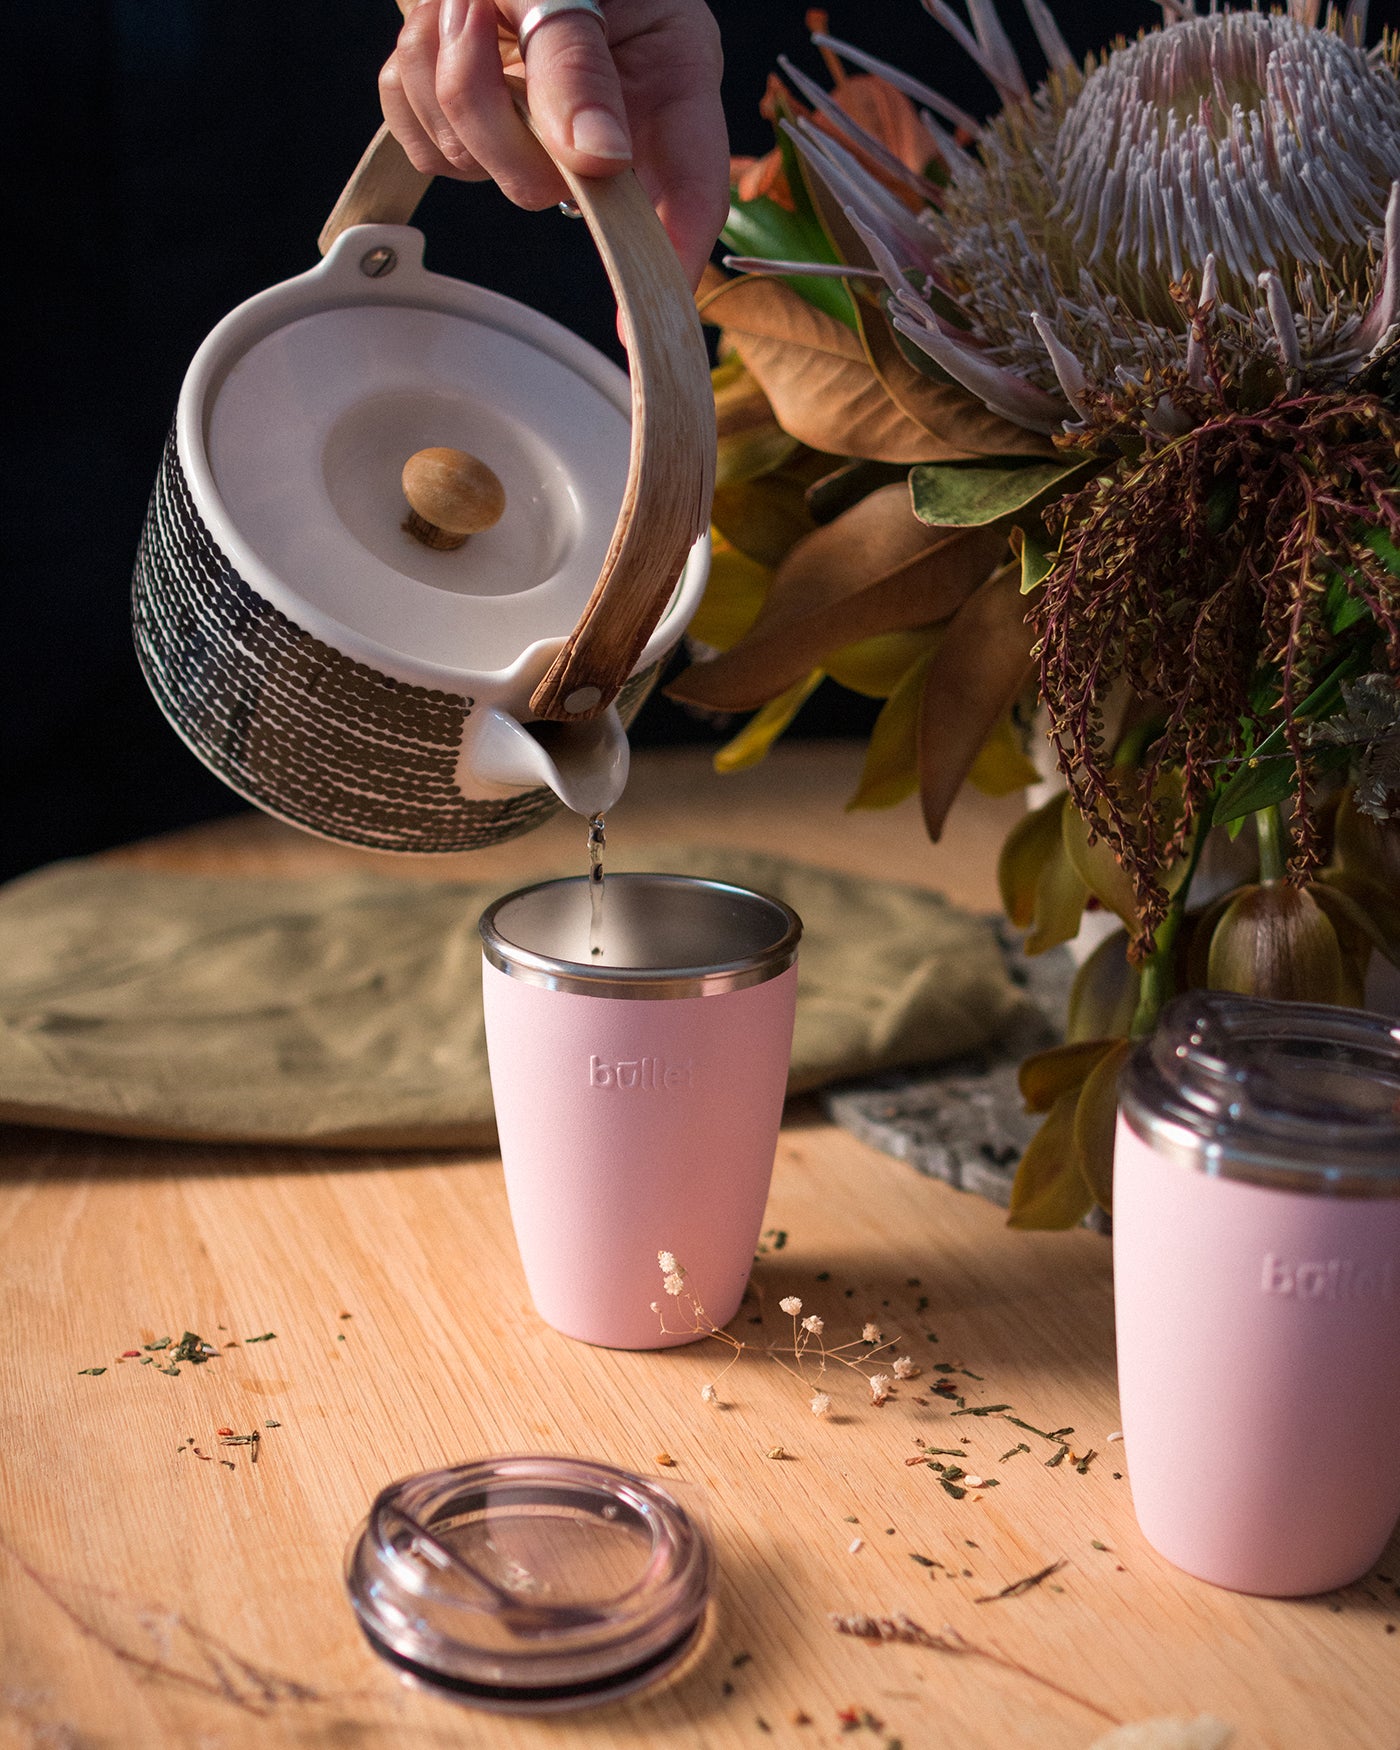 Tea poured into reusable mug amongst flowers on table